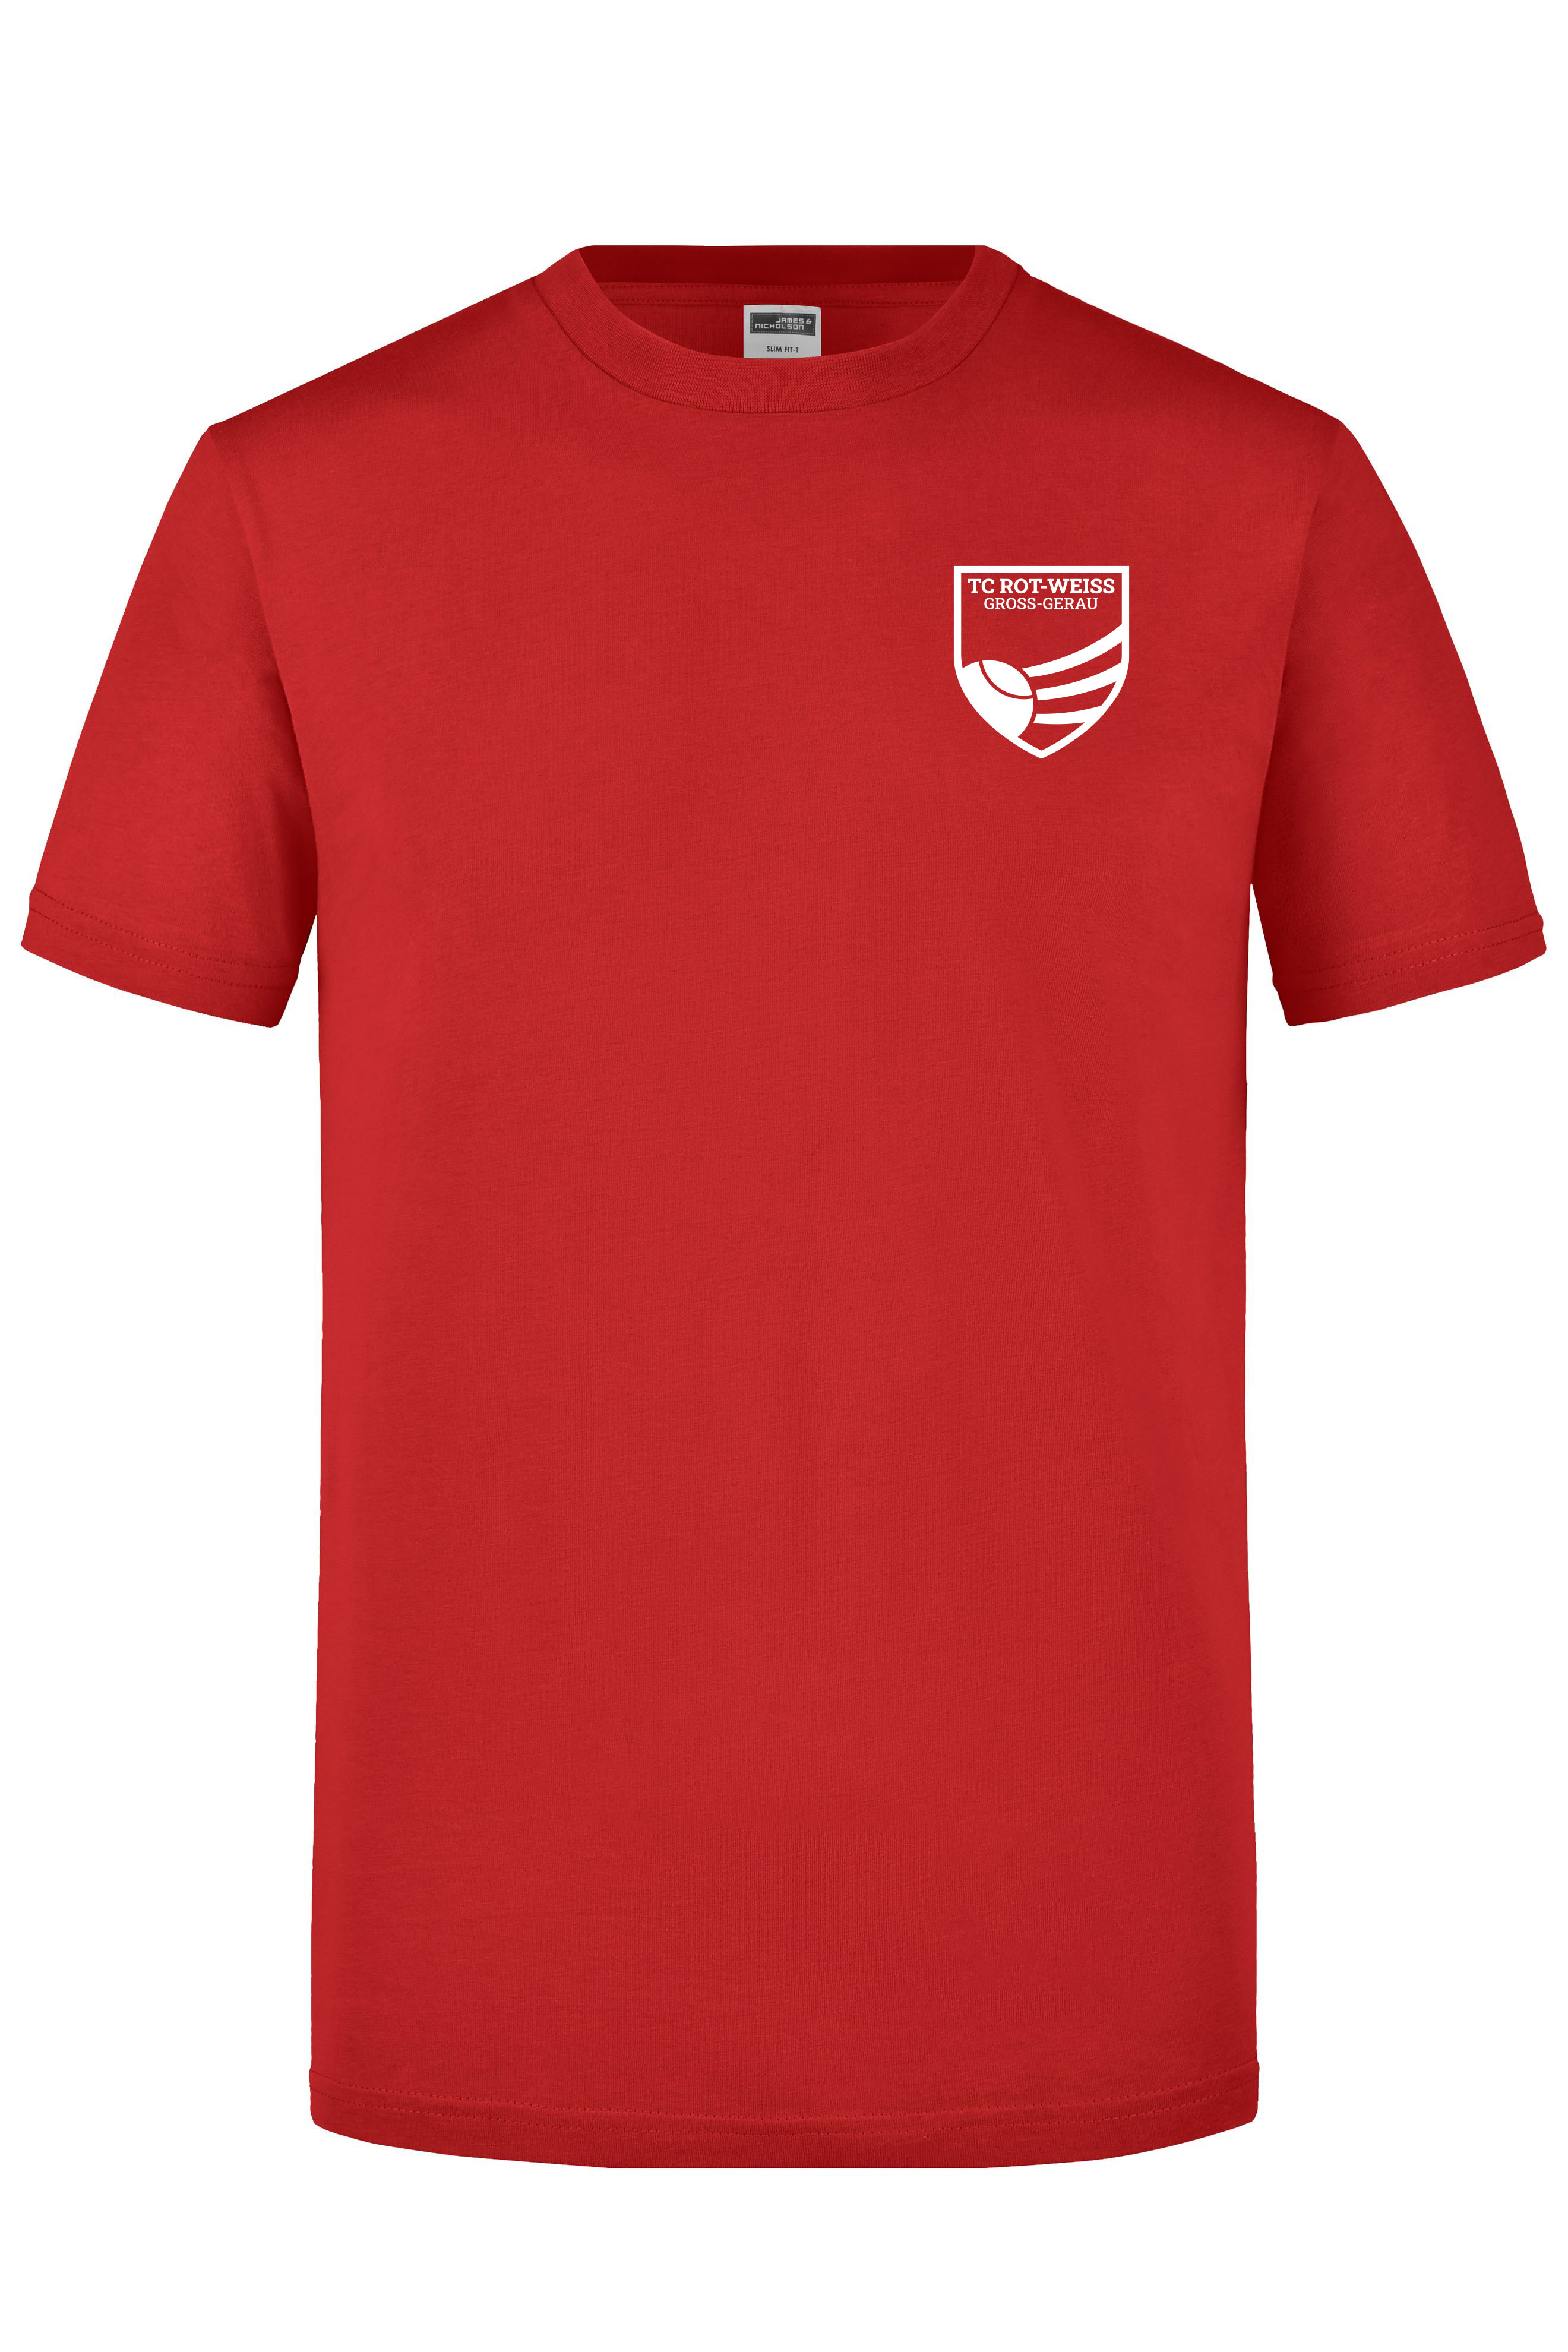 TC Rot-Weiss T-Shirt weiss auf rot